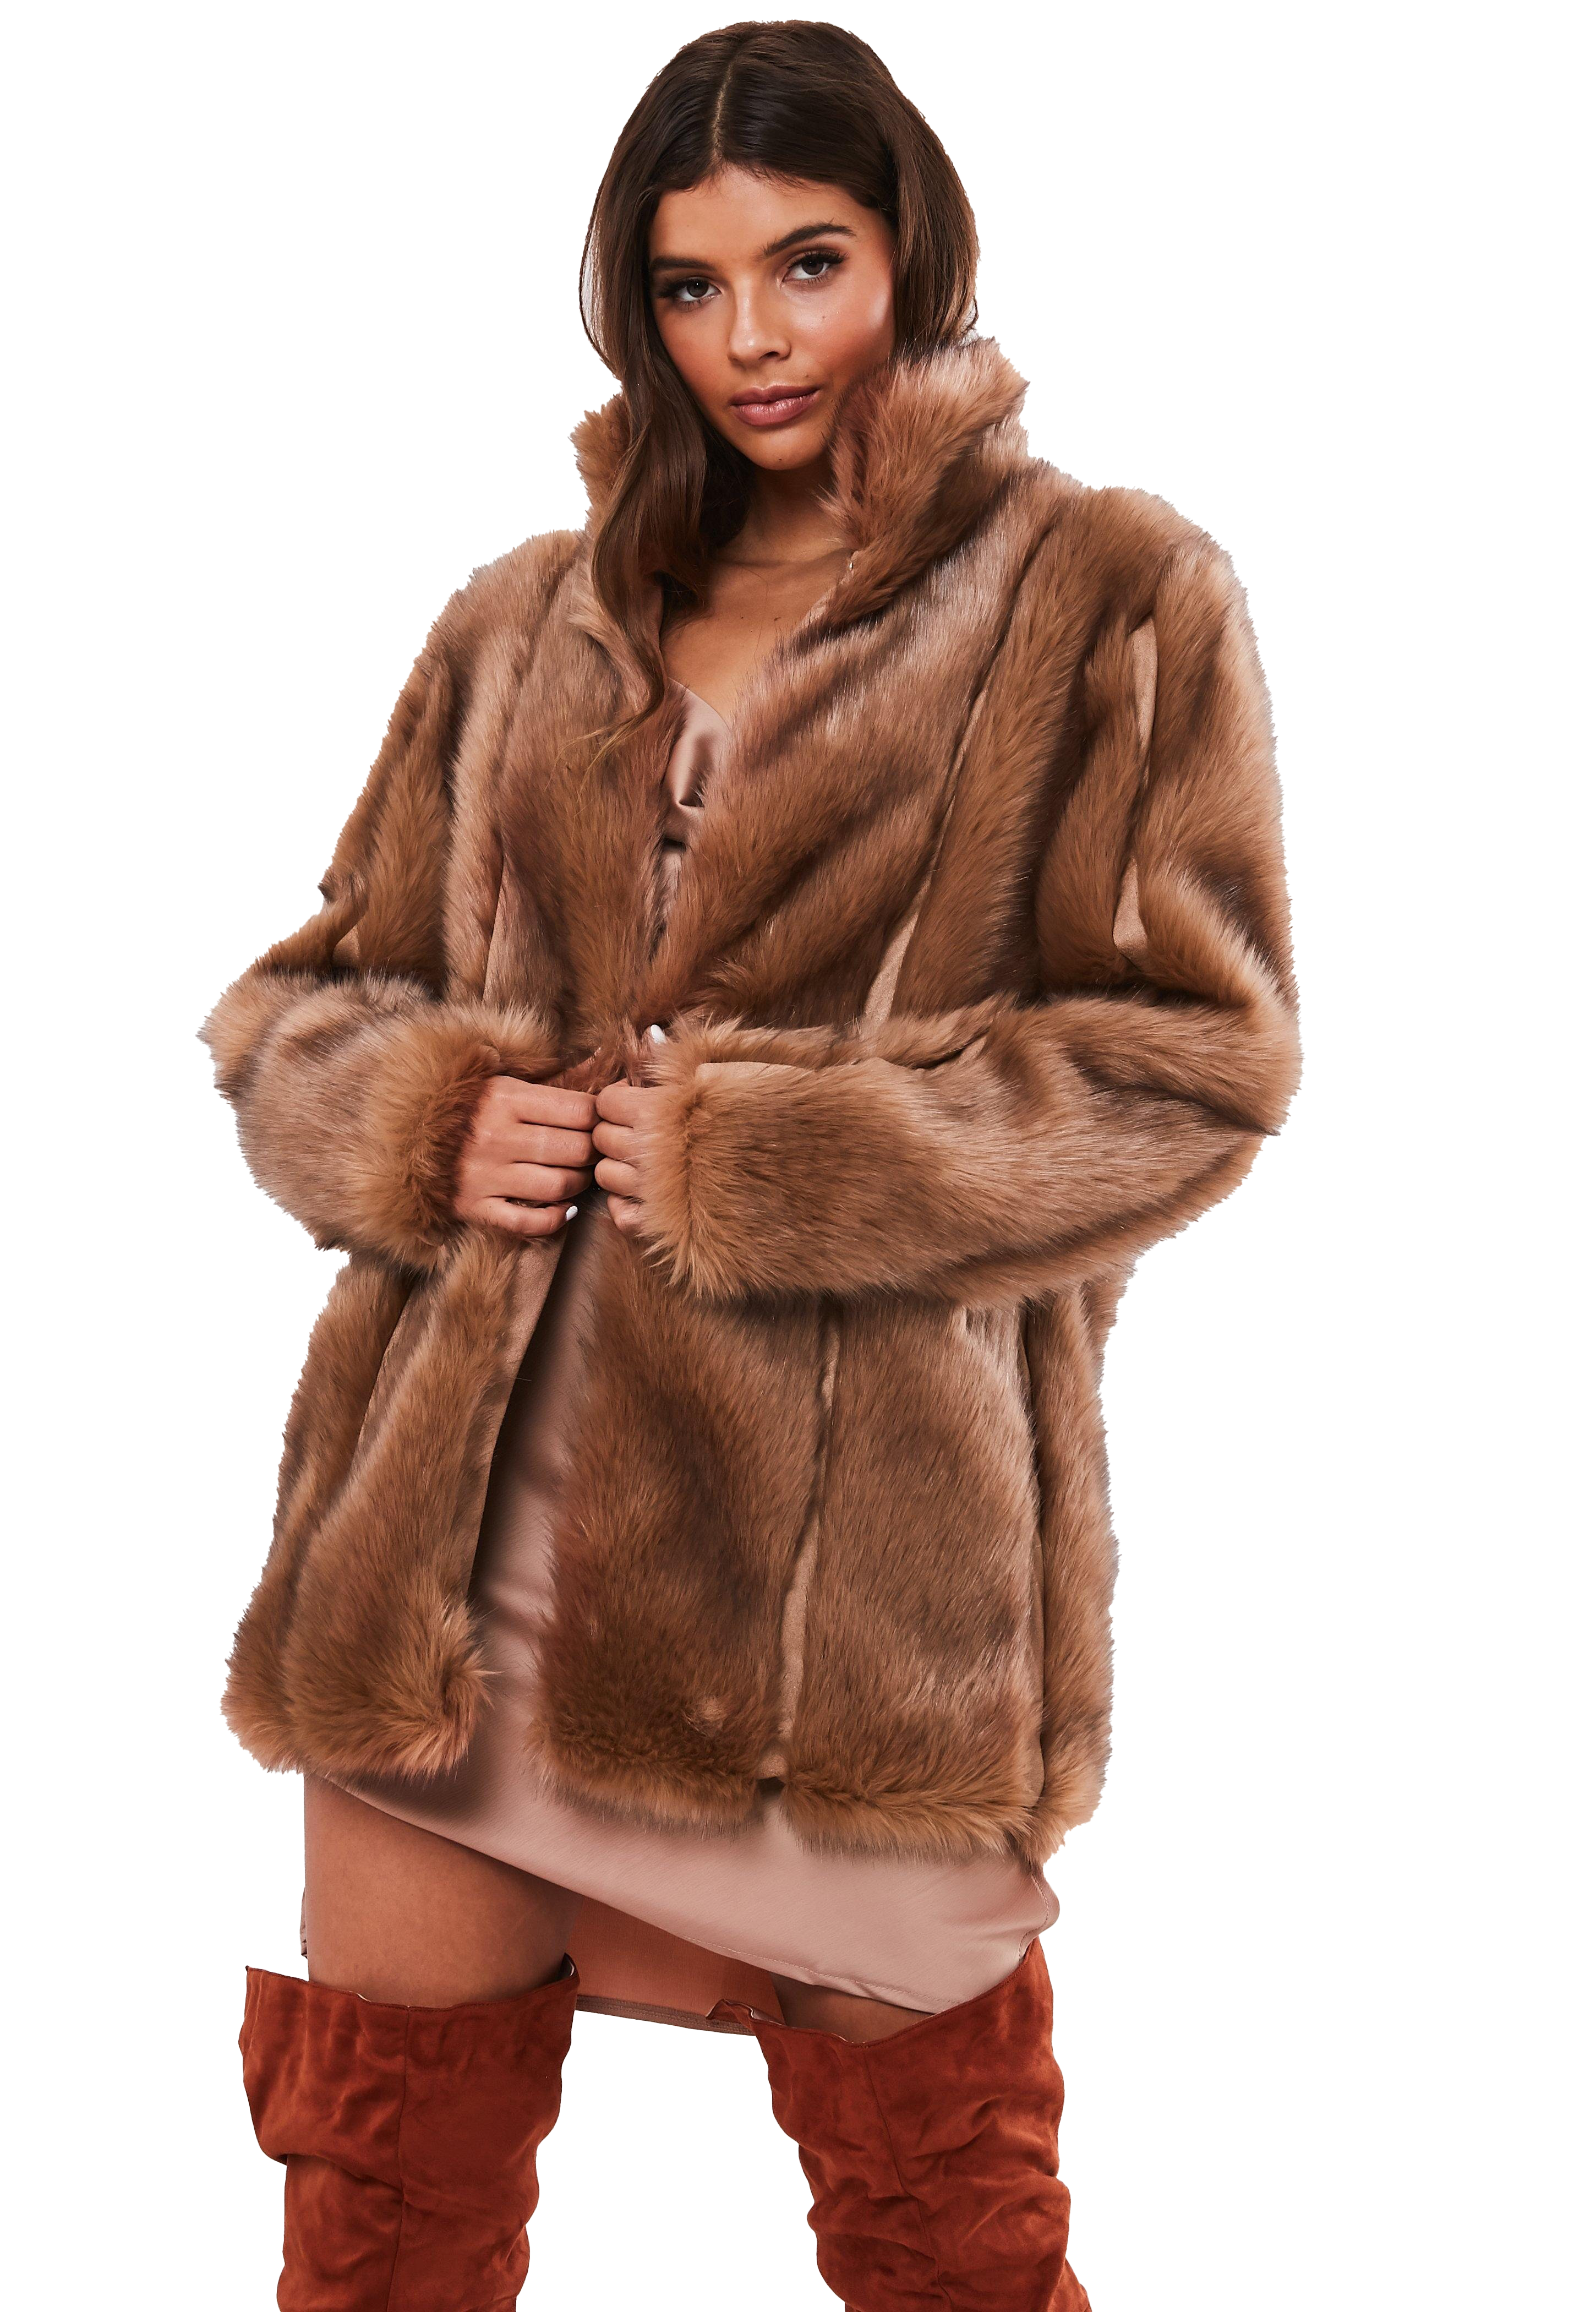 Fur Coat PNG Image HD